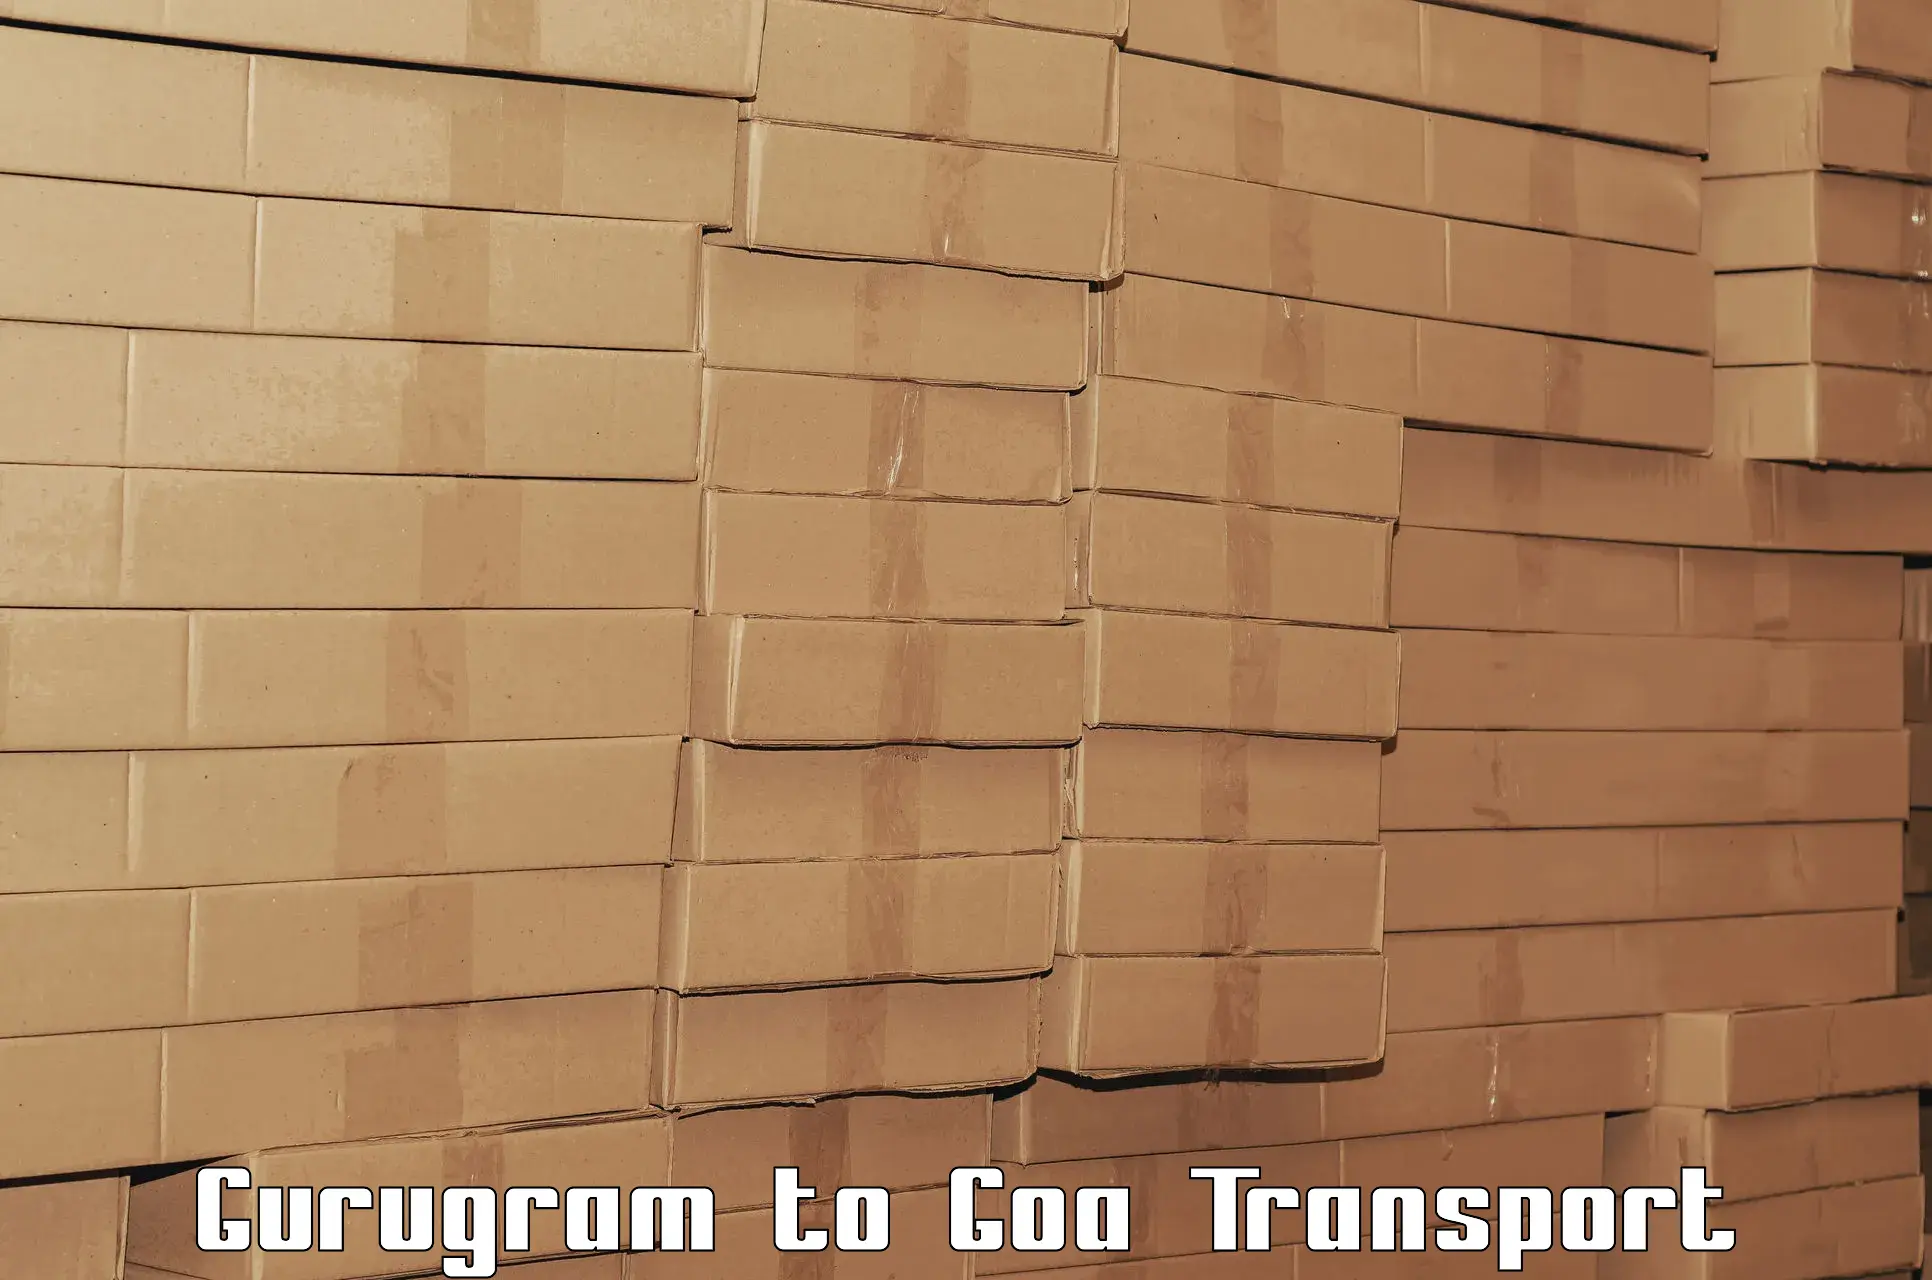 Daily transport service Gurugram to Mormugao Port